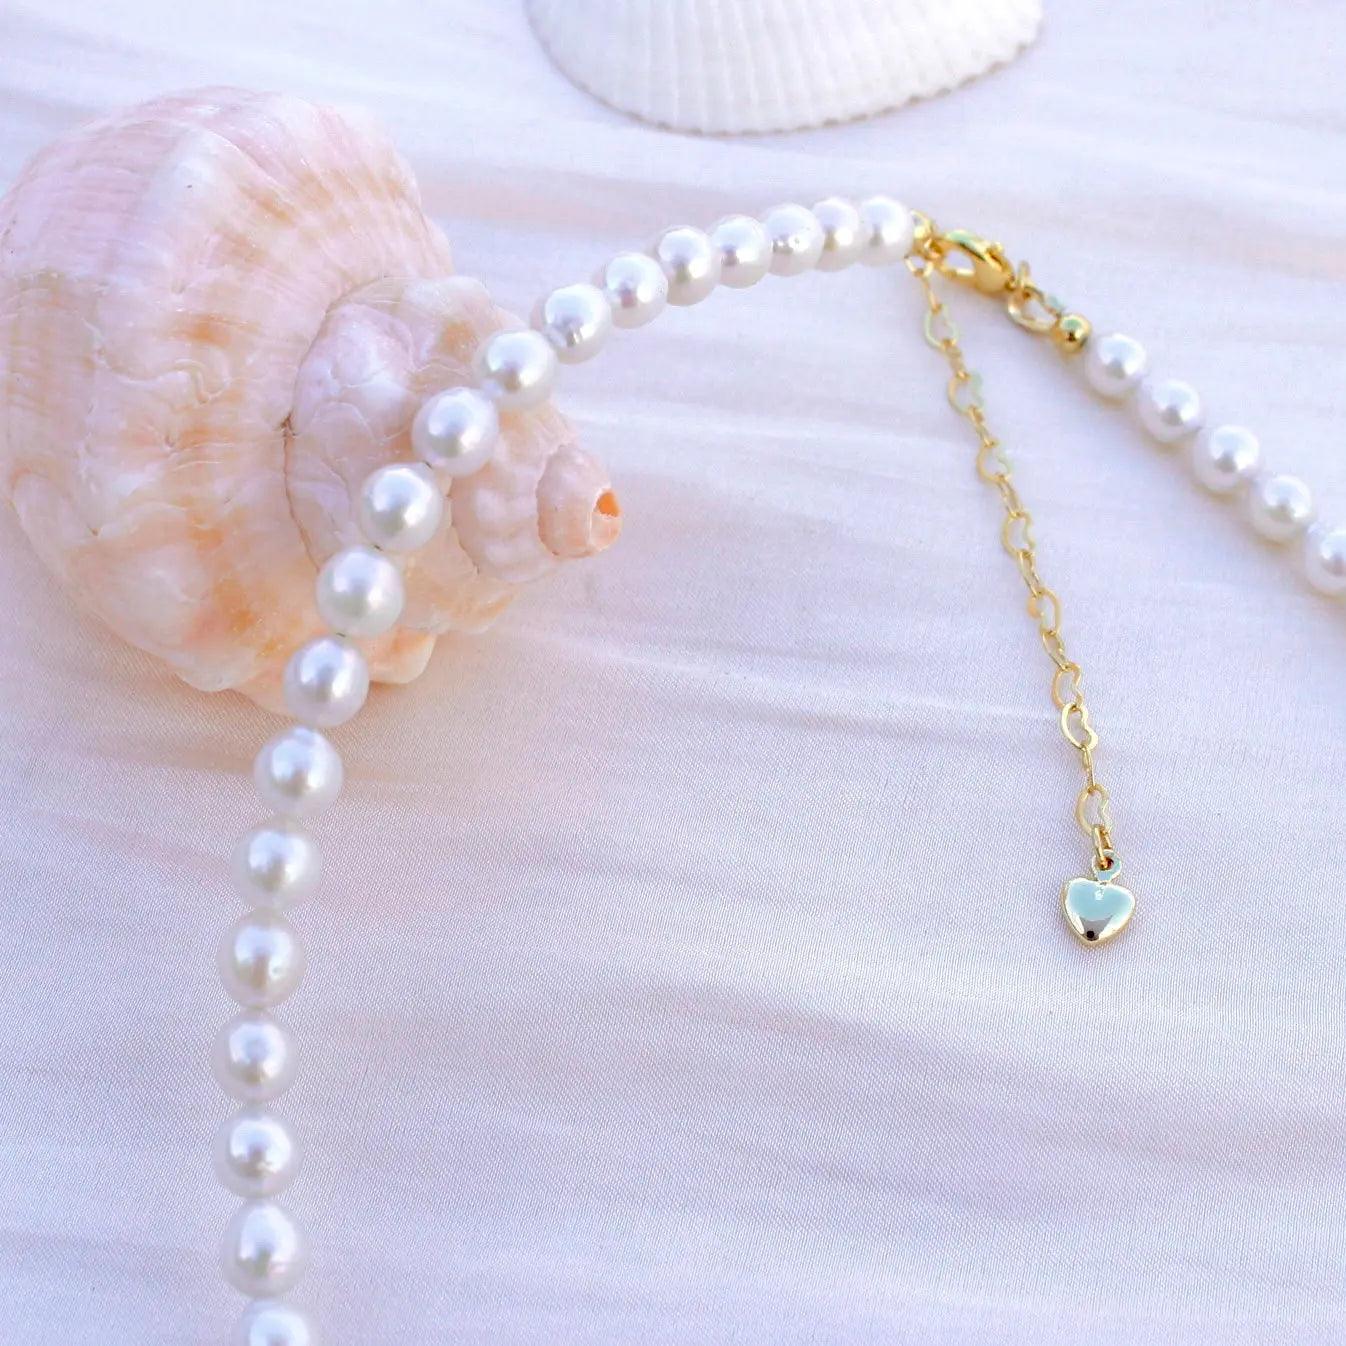 6mm klassische Perlenkette - JK Jewelry & Accessories